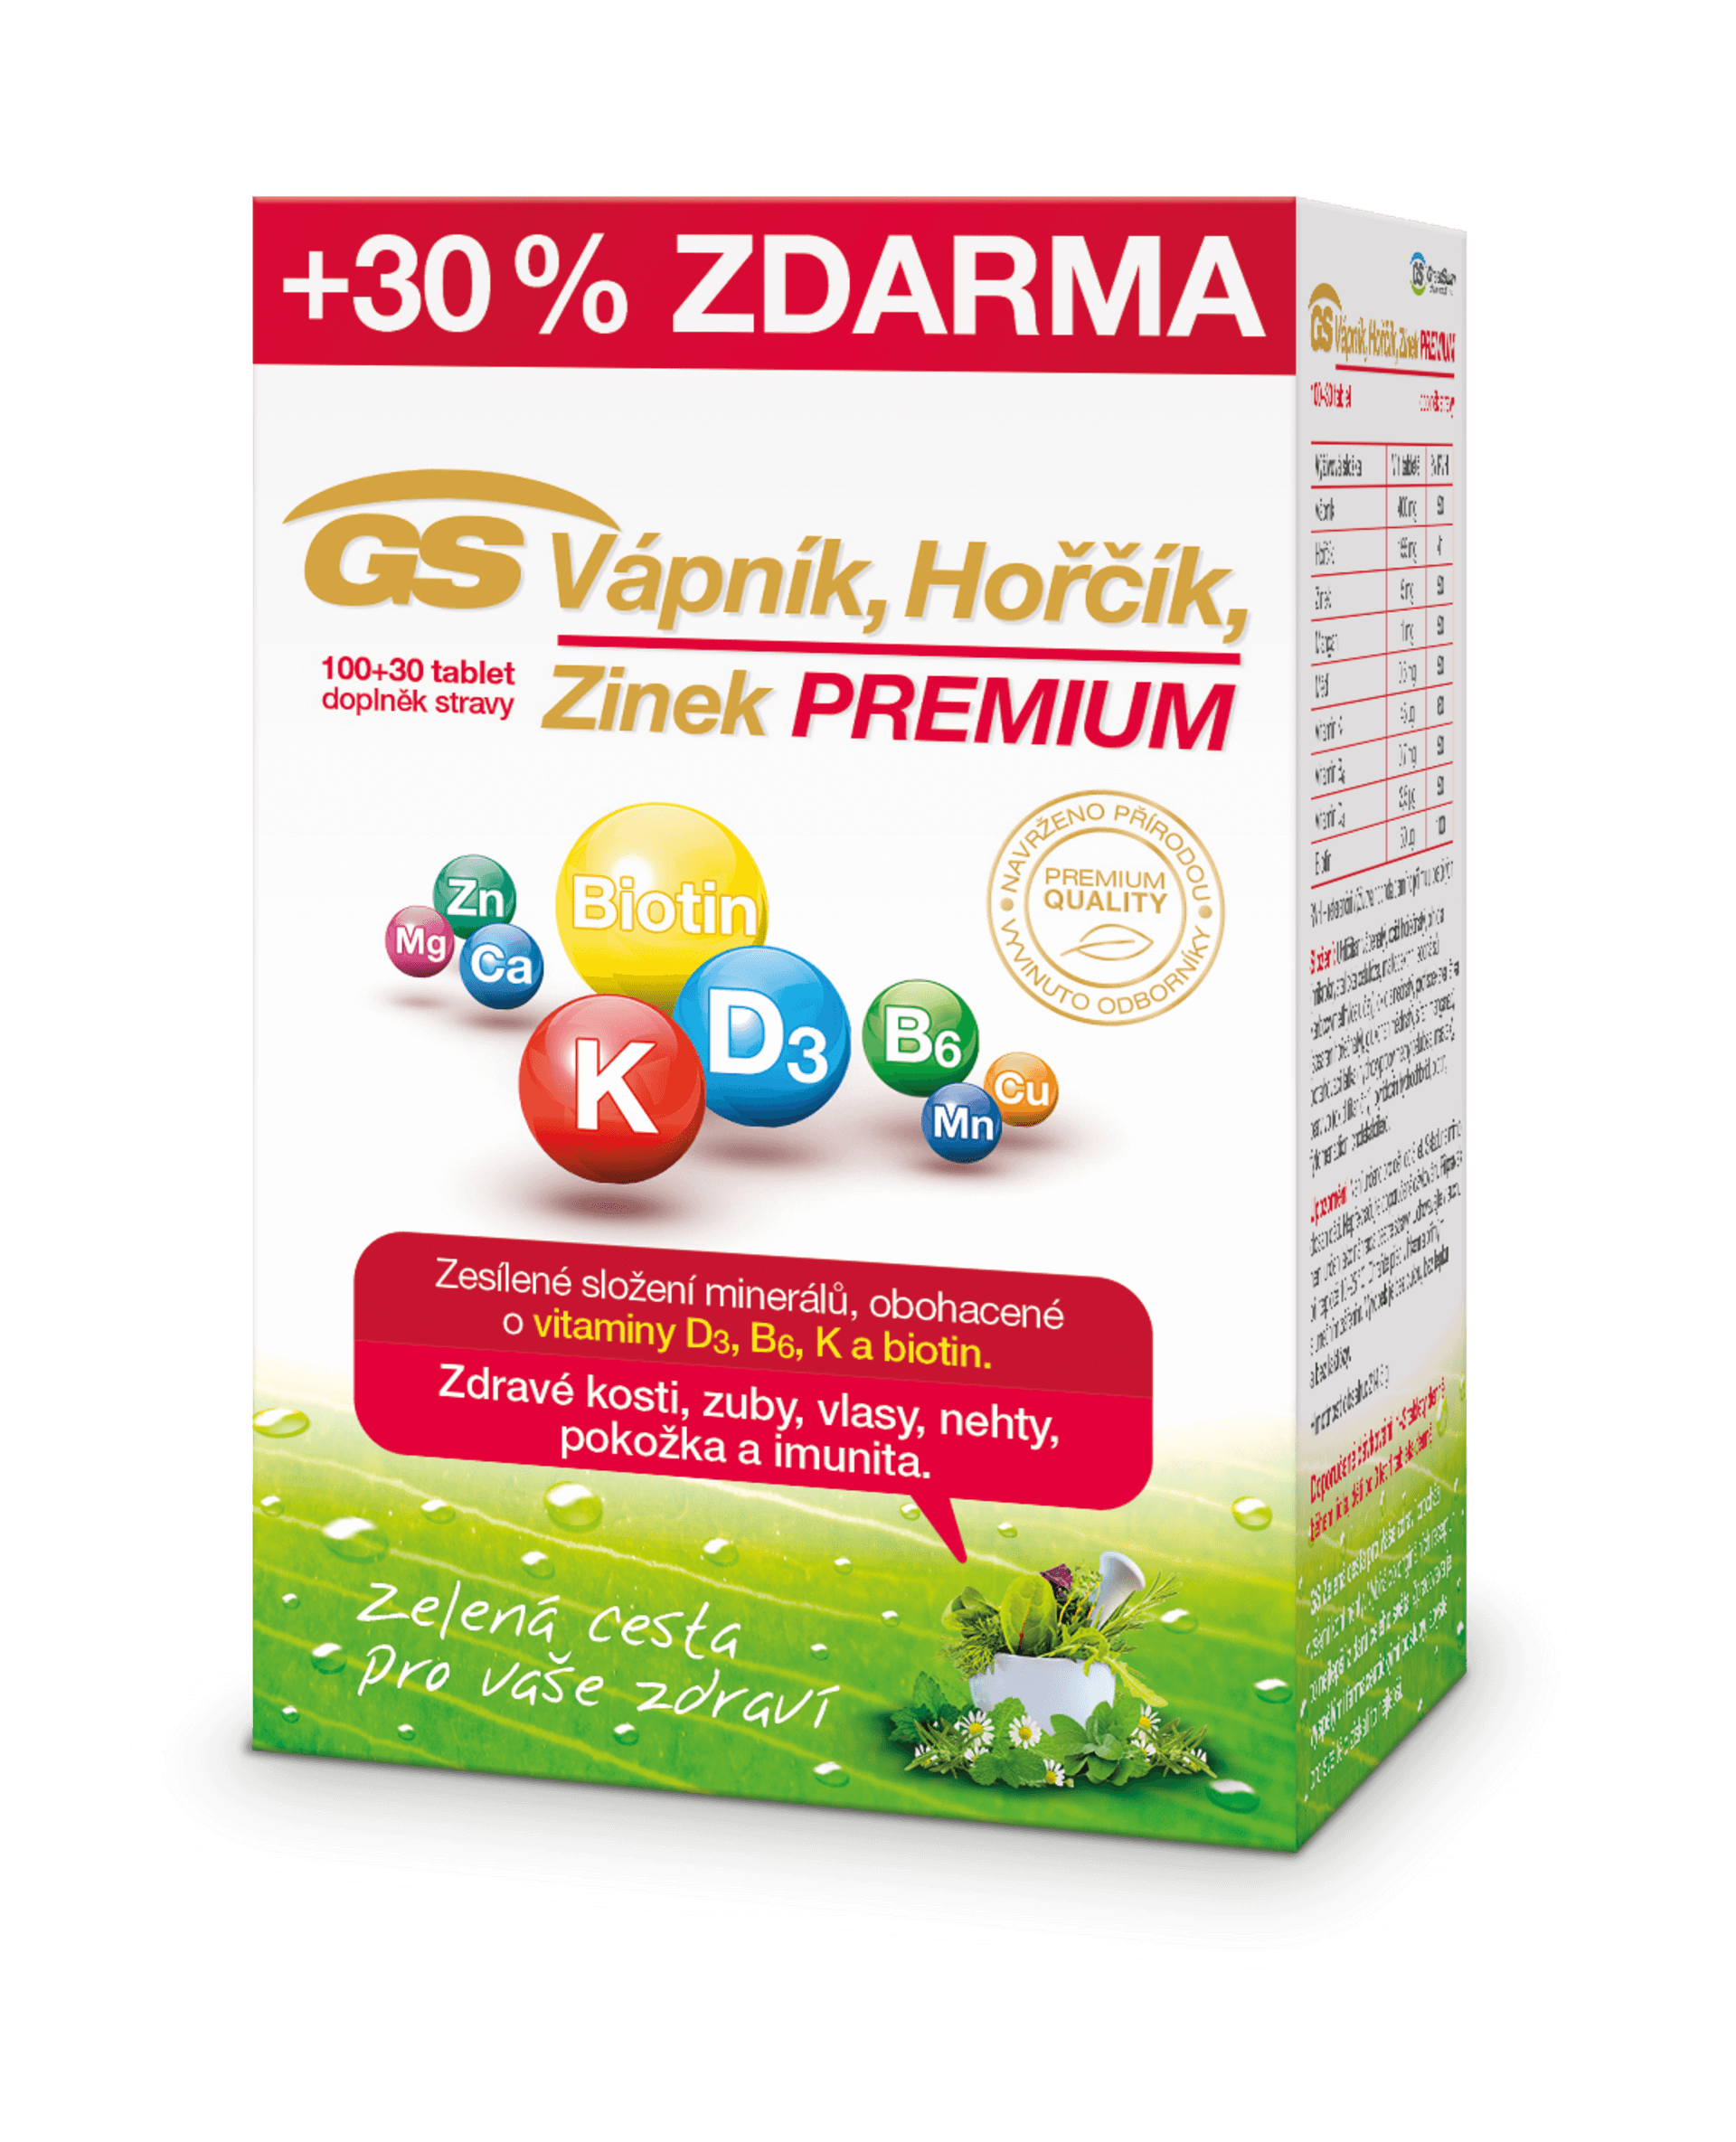 E-shop GS Vápnik horčík zinok Premium 100+30 tabliet